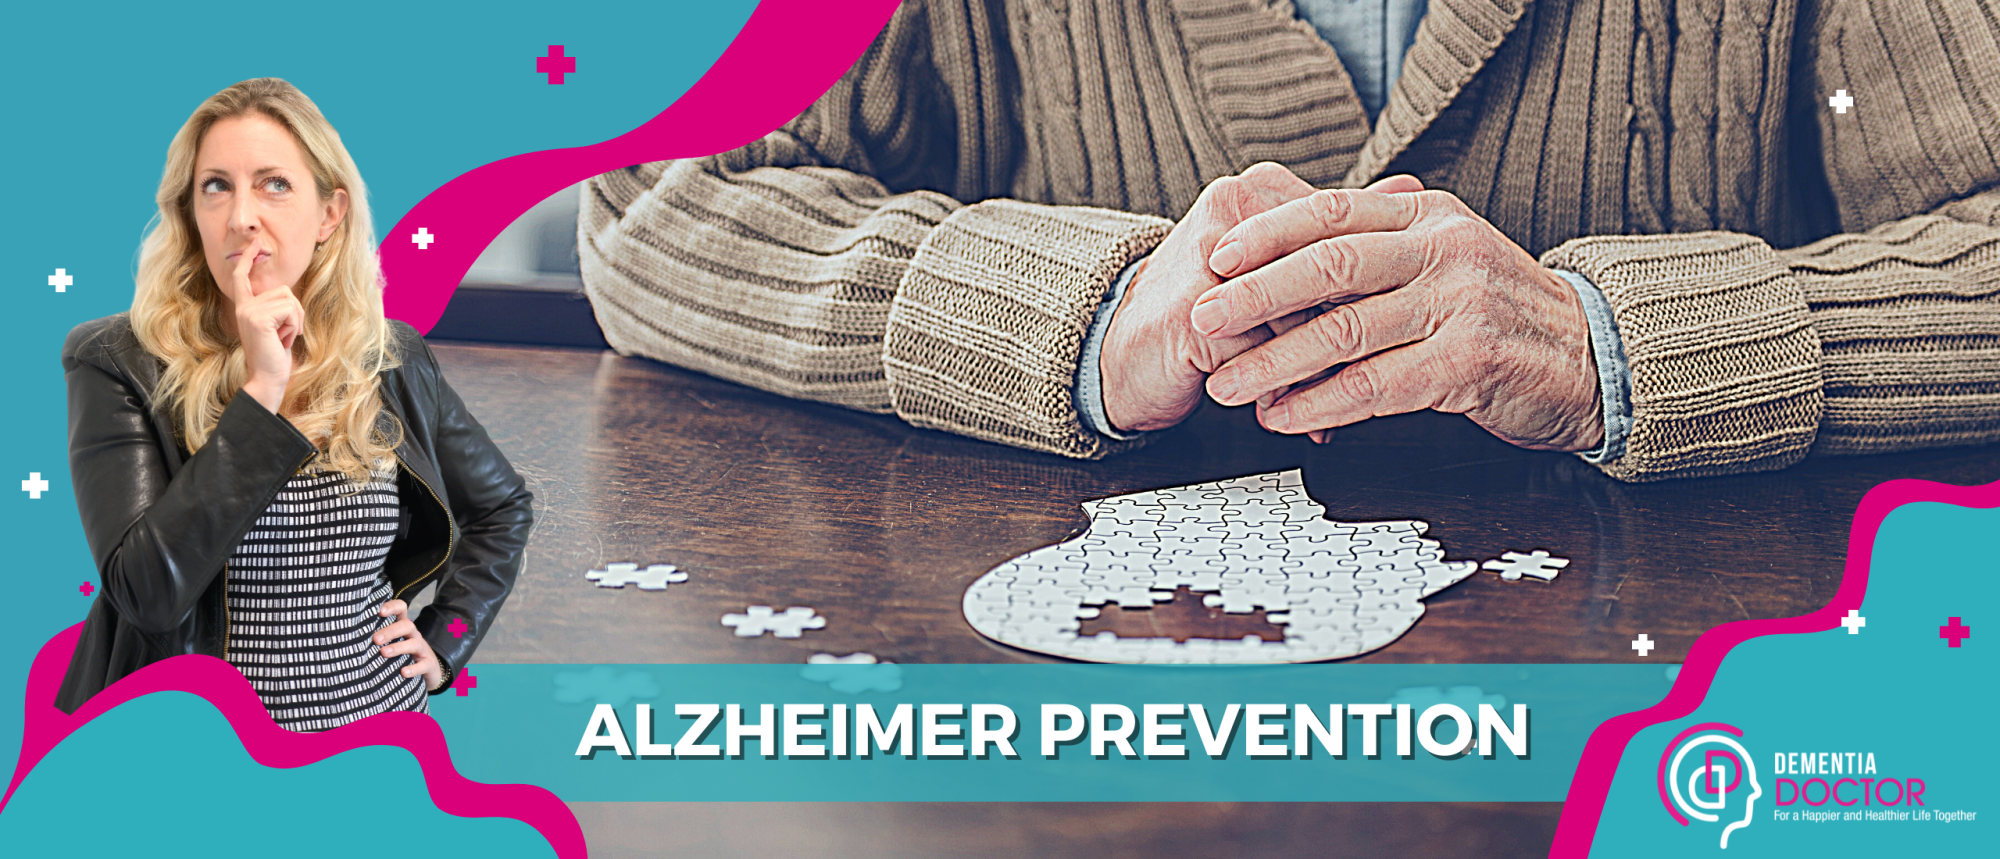 Blog Alzheimer prevention